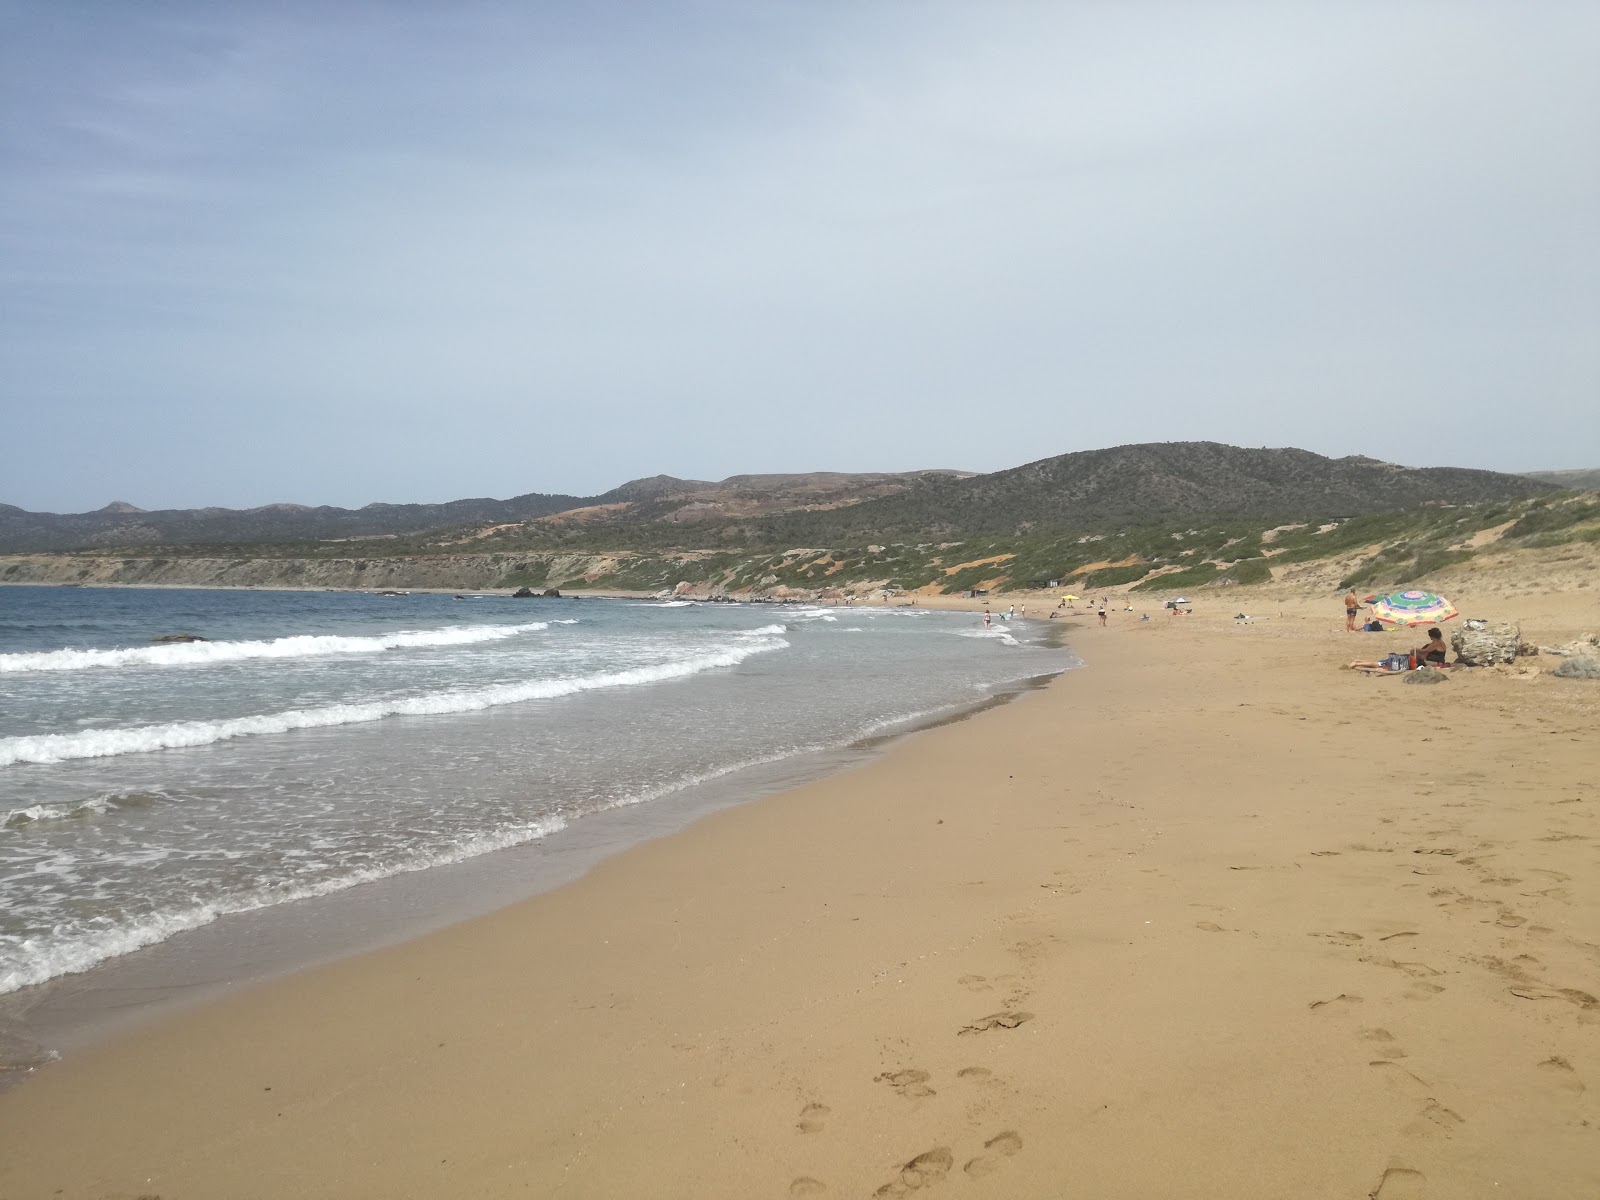 Lara beach South'in fotoğrafı doğal alan içinde bulunmaktadır